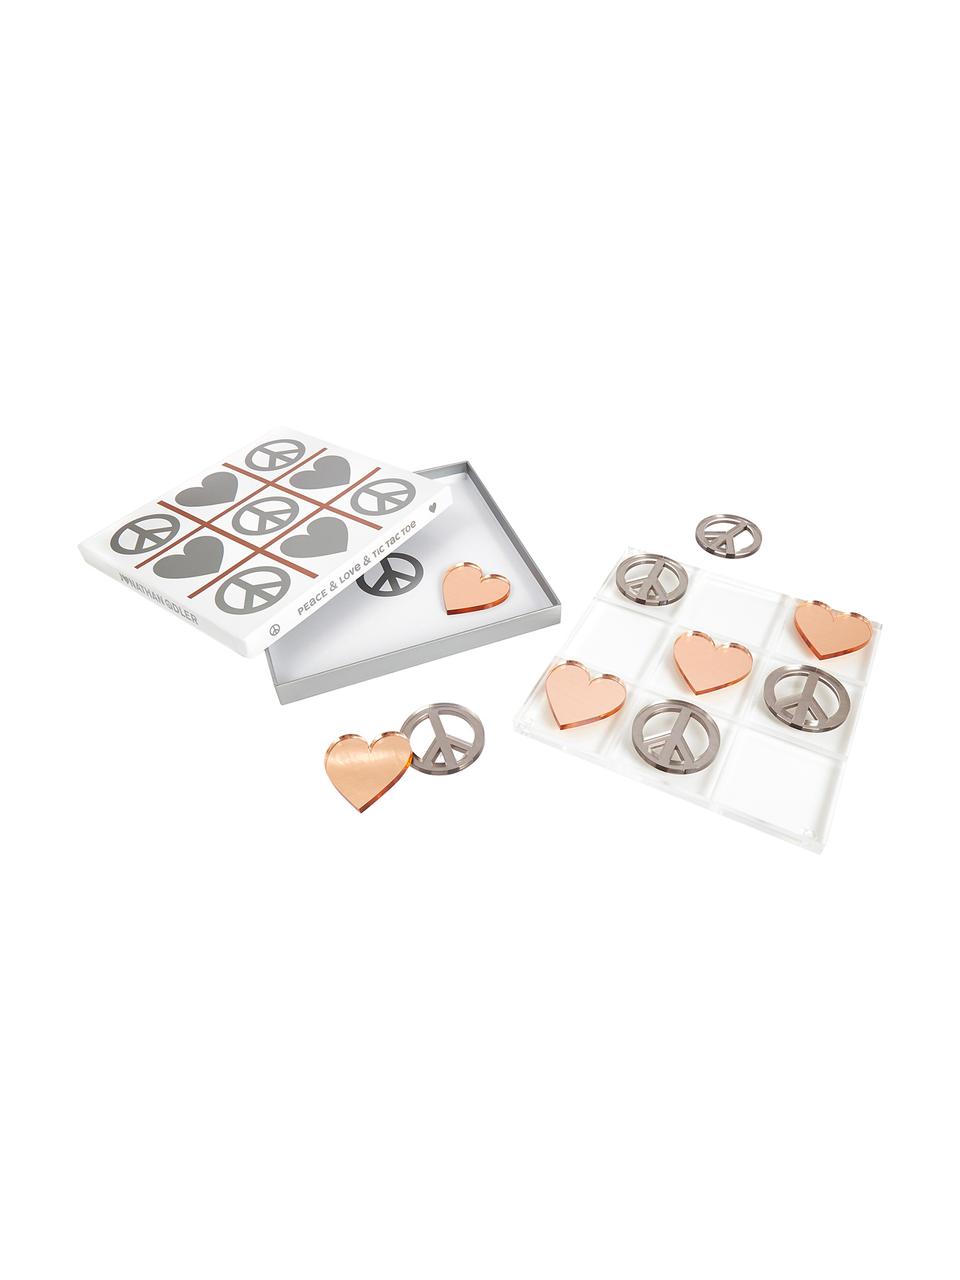 Gioco da tavolo Love & Peace Tic Tac Toe, 100% vetro acrilico, Elementi del gioco: argento e color rame Scheda di gioco: trasparente, P 26 x L 26 cm